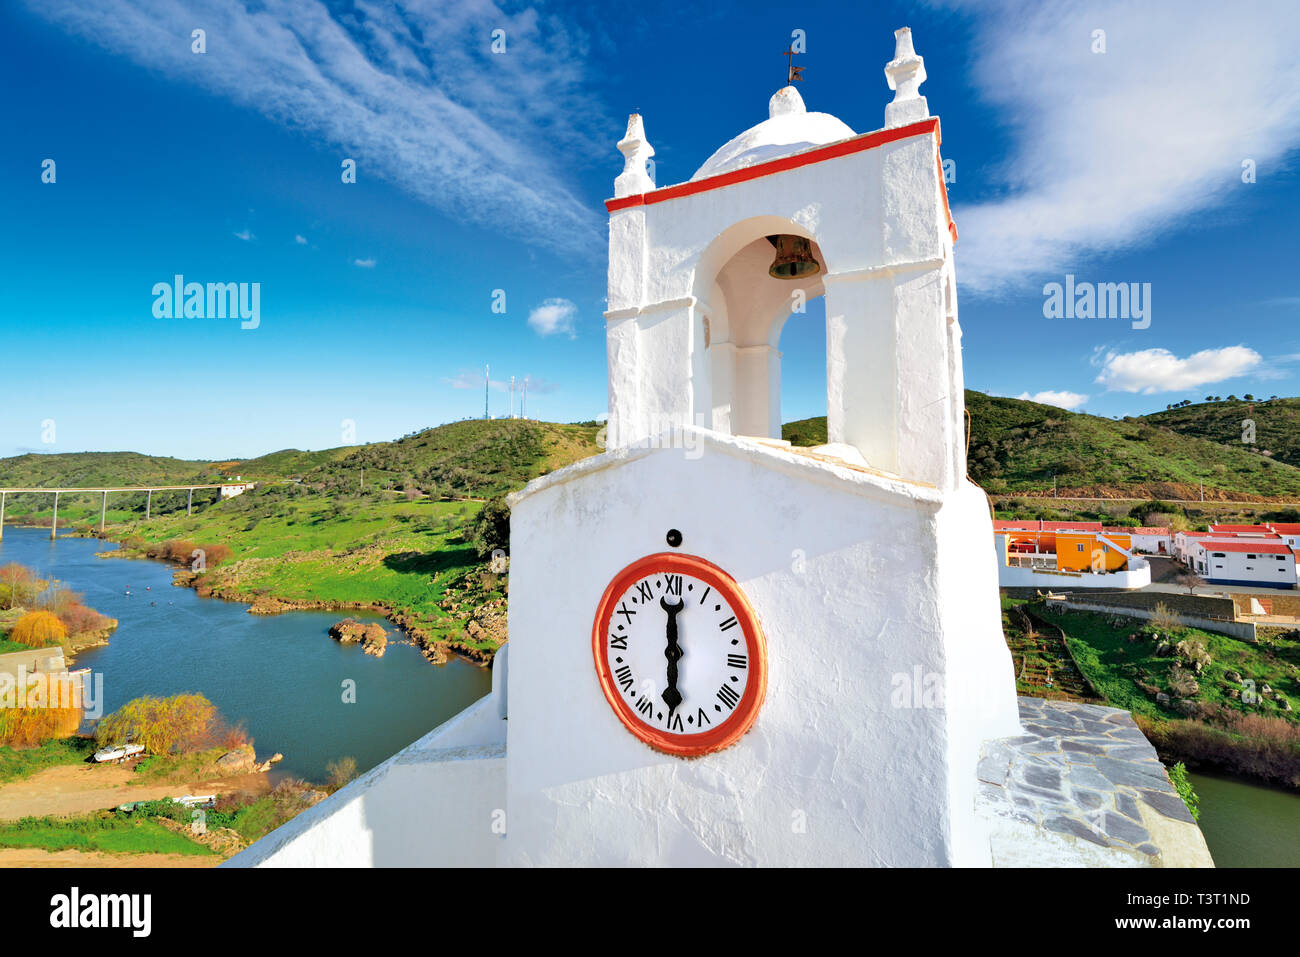 Bianco brillante lavato clock tower con vista fiume con il verde delle colline in una giornata di sole Foto Stock